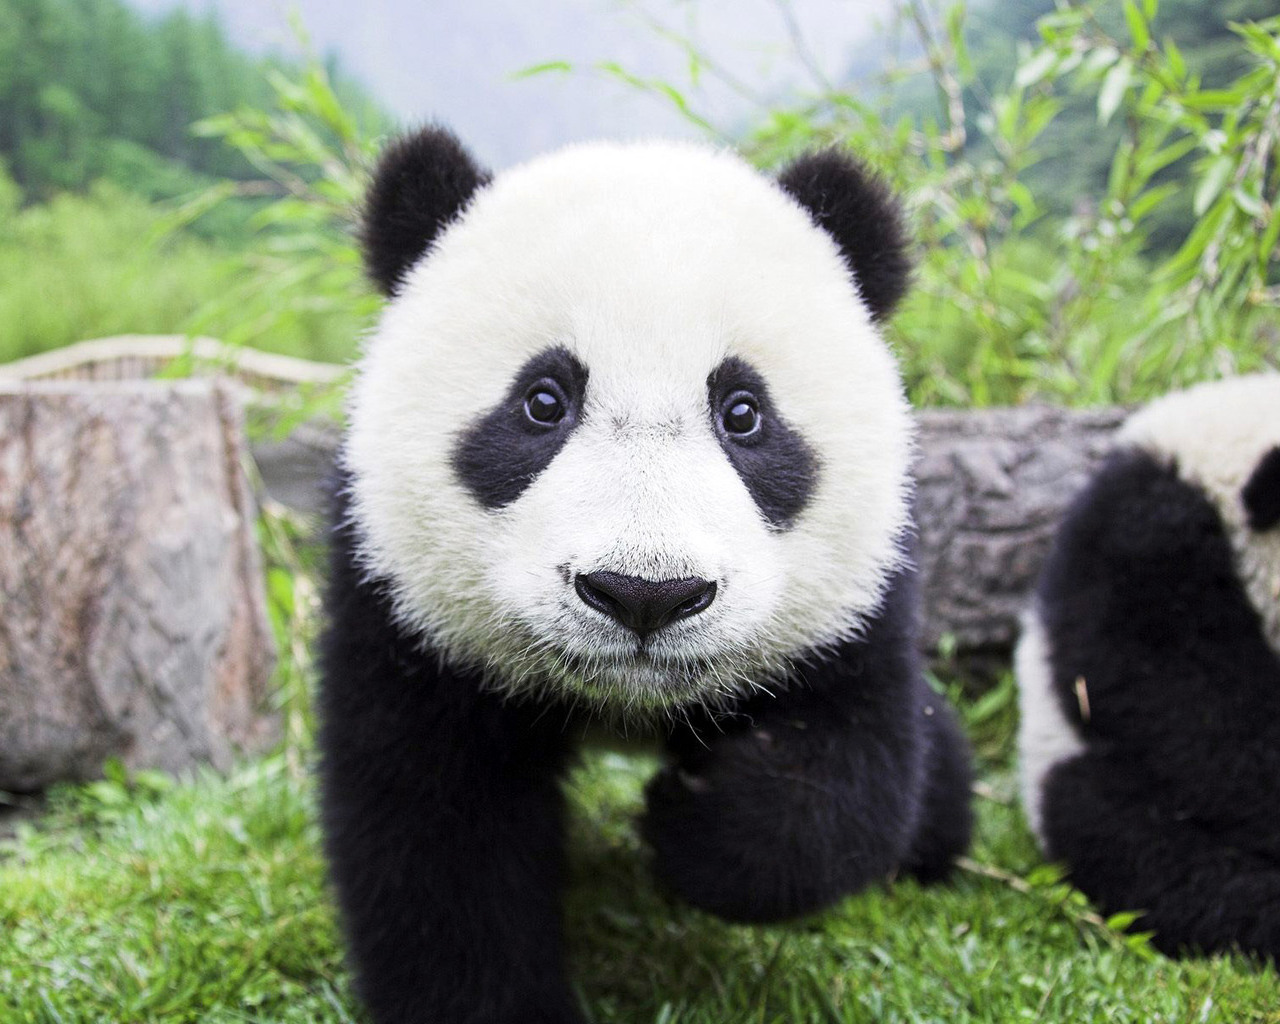 Fotos von Pandas Bären Tiere Großer Panda ein Bär ein Tier